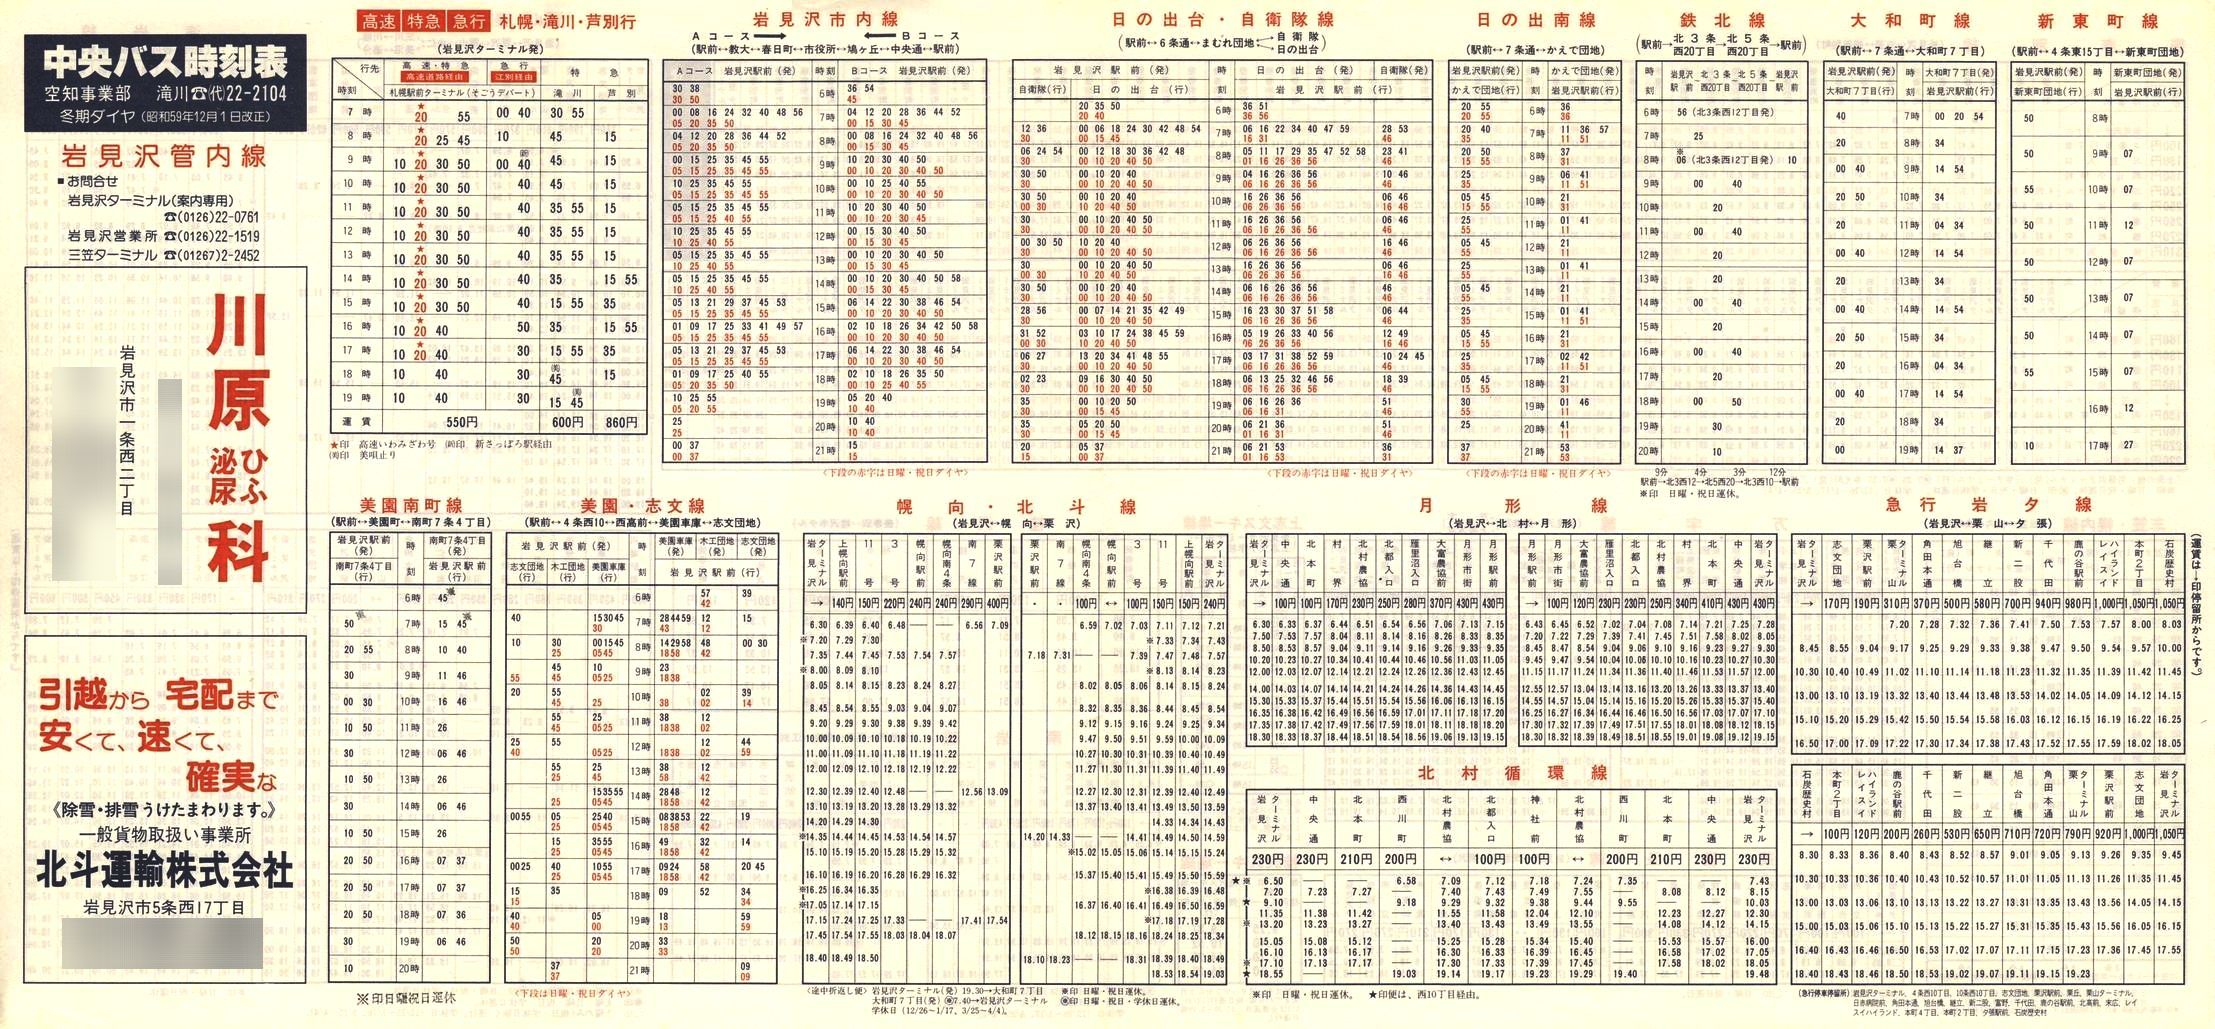 1984-12-01改正_北海道中央バス(空知)_岩見沢管内線時刻表表面